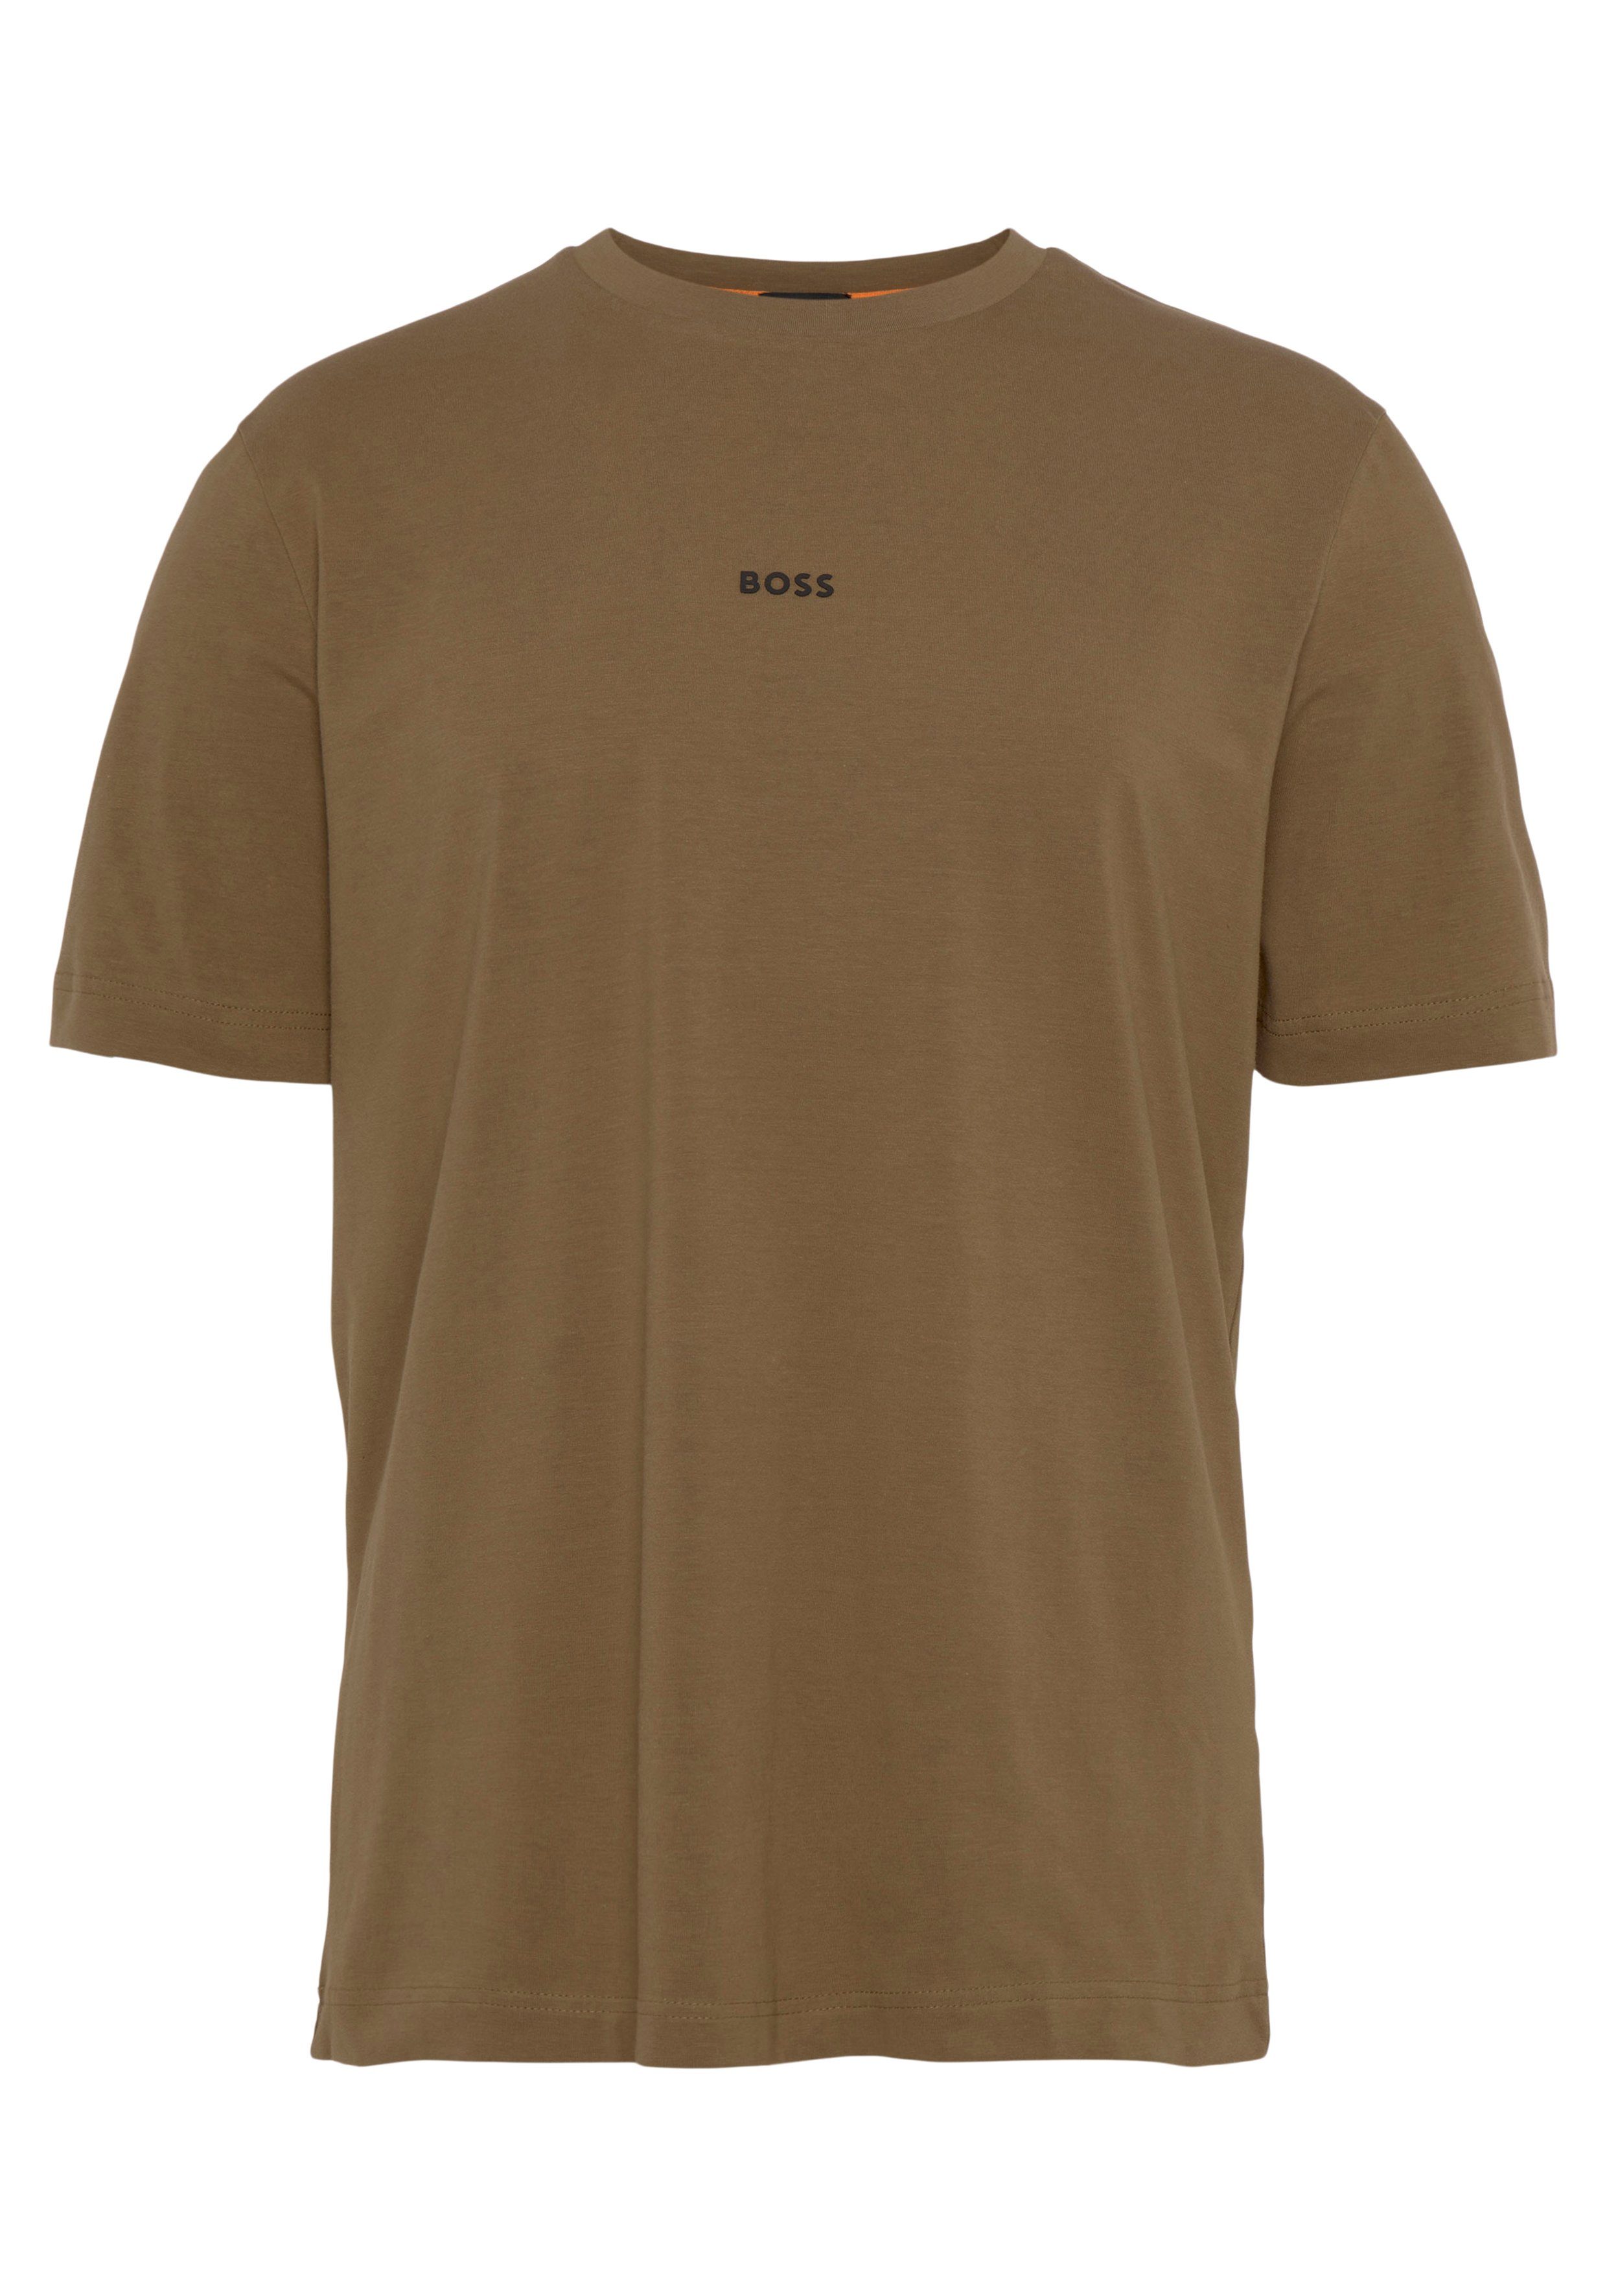 BOSS ORANGE Kurzarmshirt auf mit der BOSS-Logodruck TChup beige1 Brust